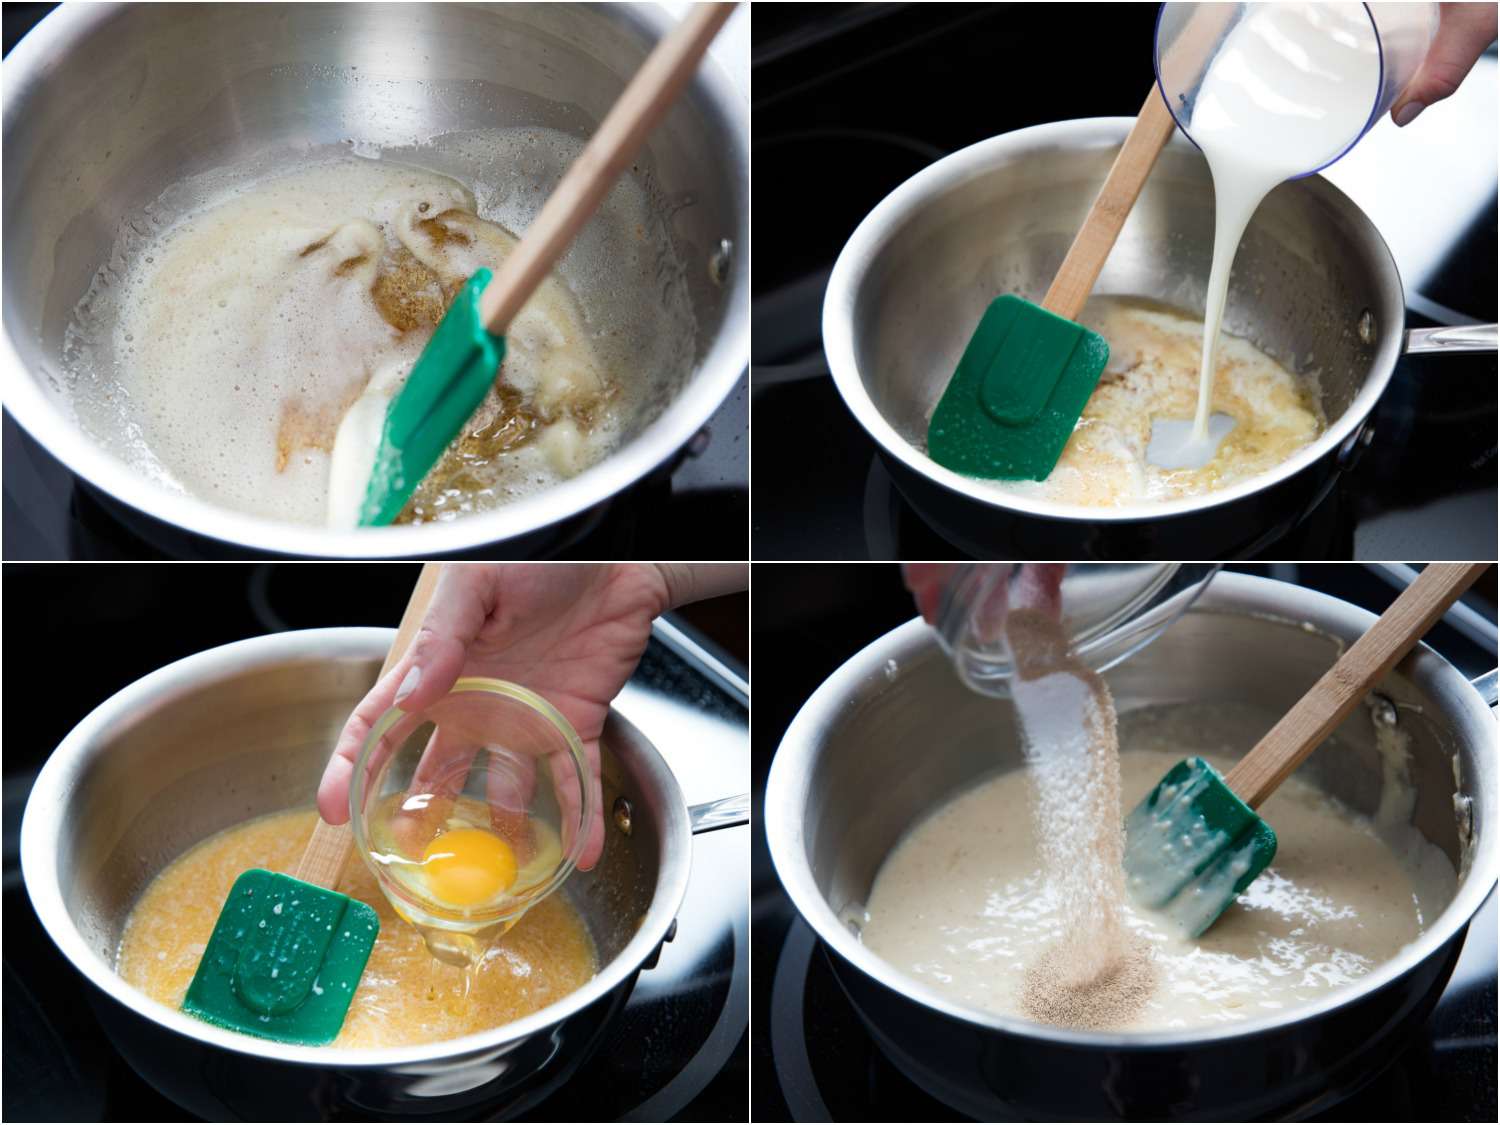 拼贴画展示了制作面糊的过程:黄油焦黄，在黄油中加入牛奶，在混合物中加入鸡蛋、酵母和面粉。gydF4y2Ba